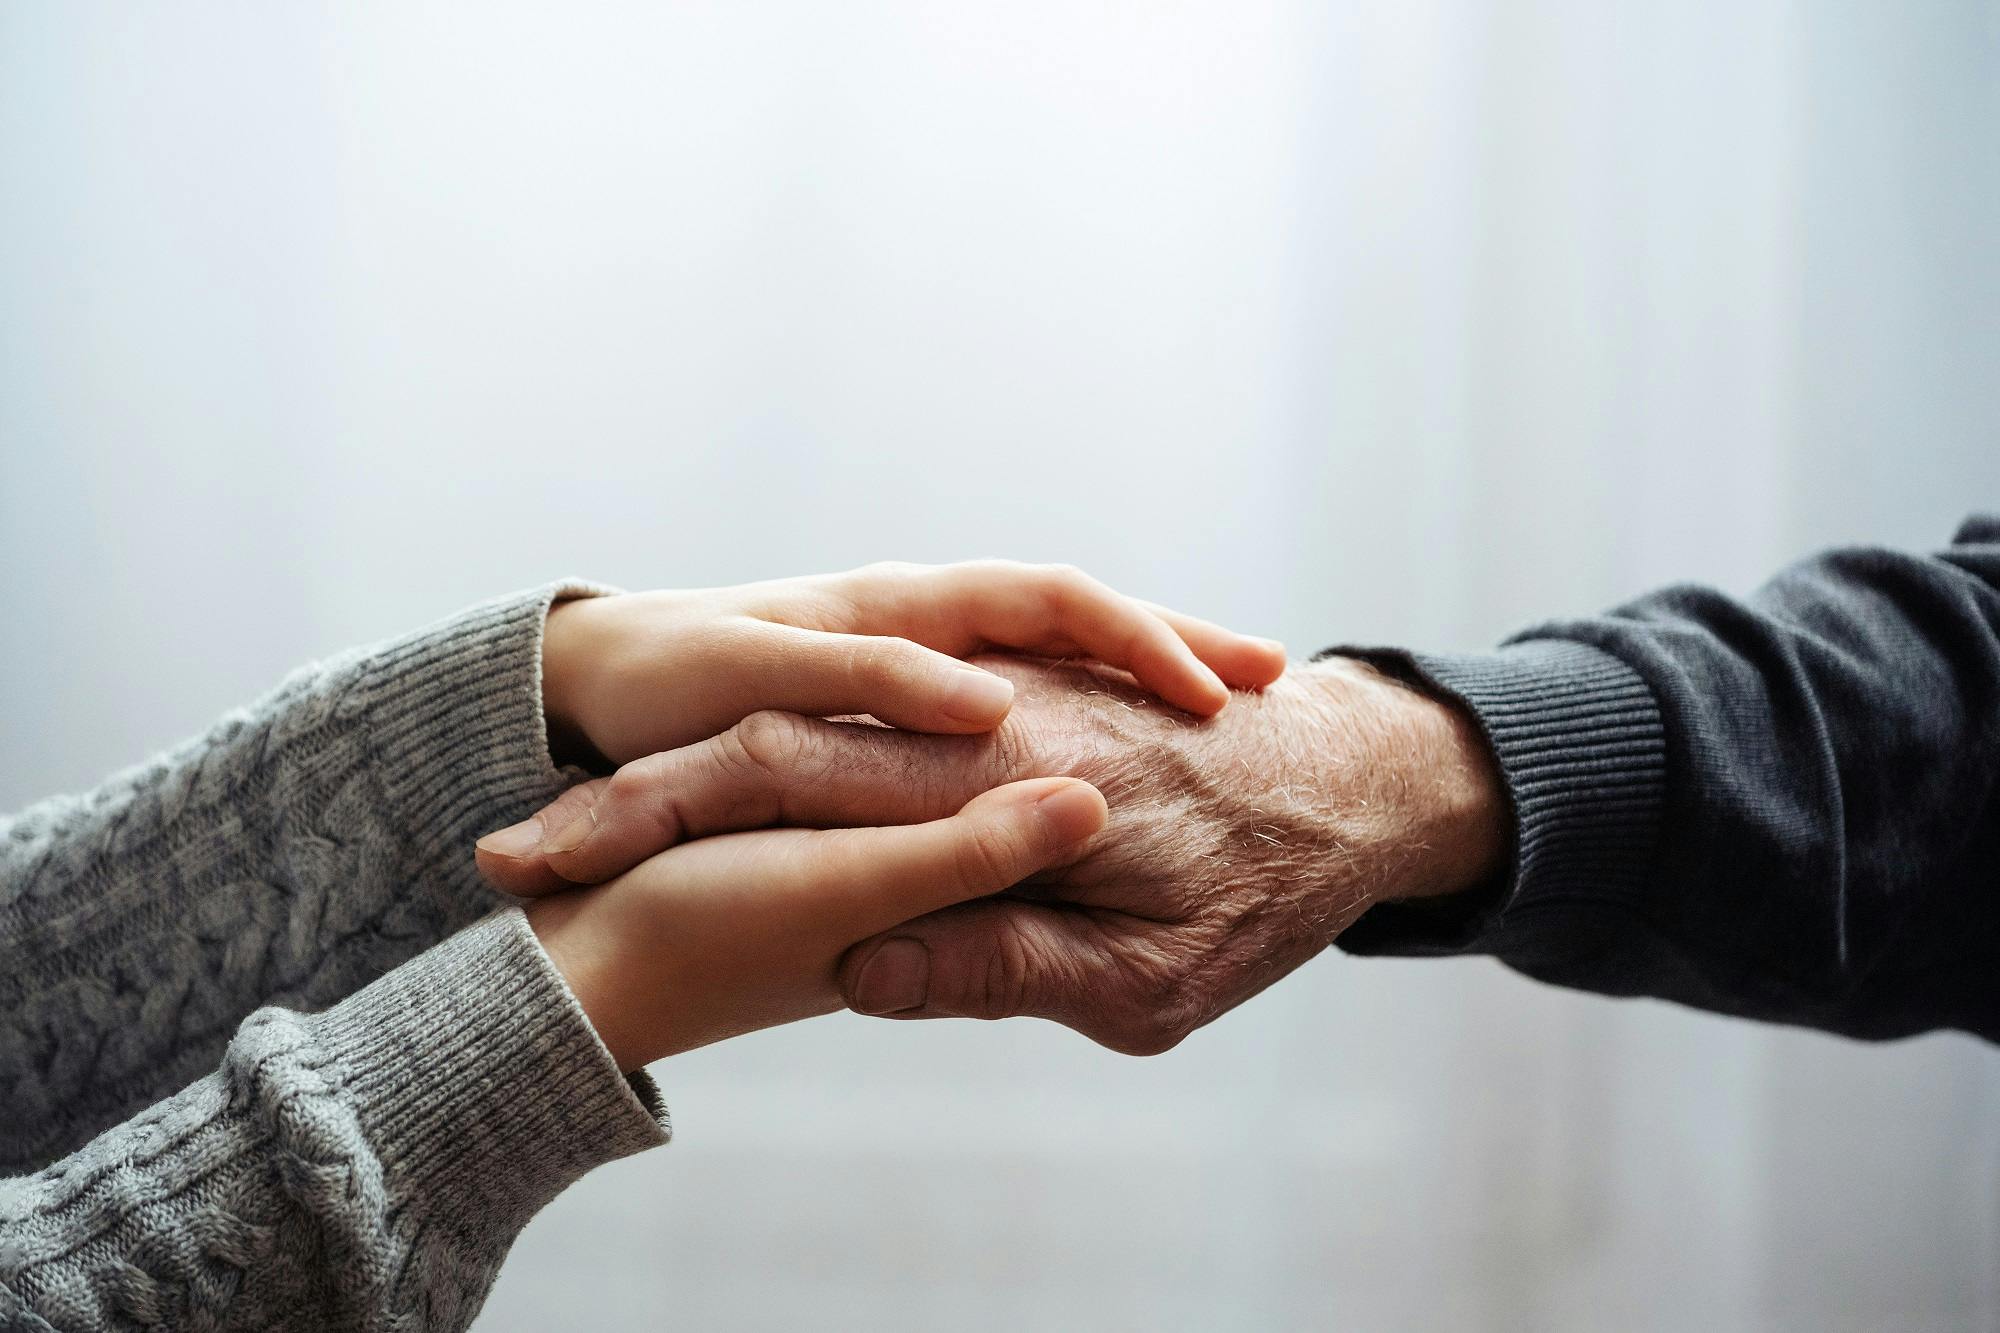 Zwei Personen halten Hände als Zeichen von Fürsorge und Verbundenheit.